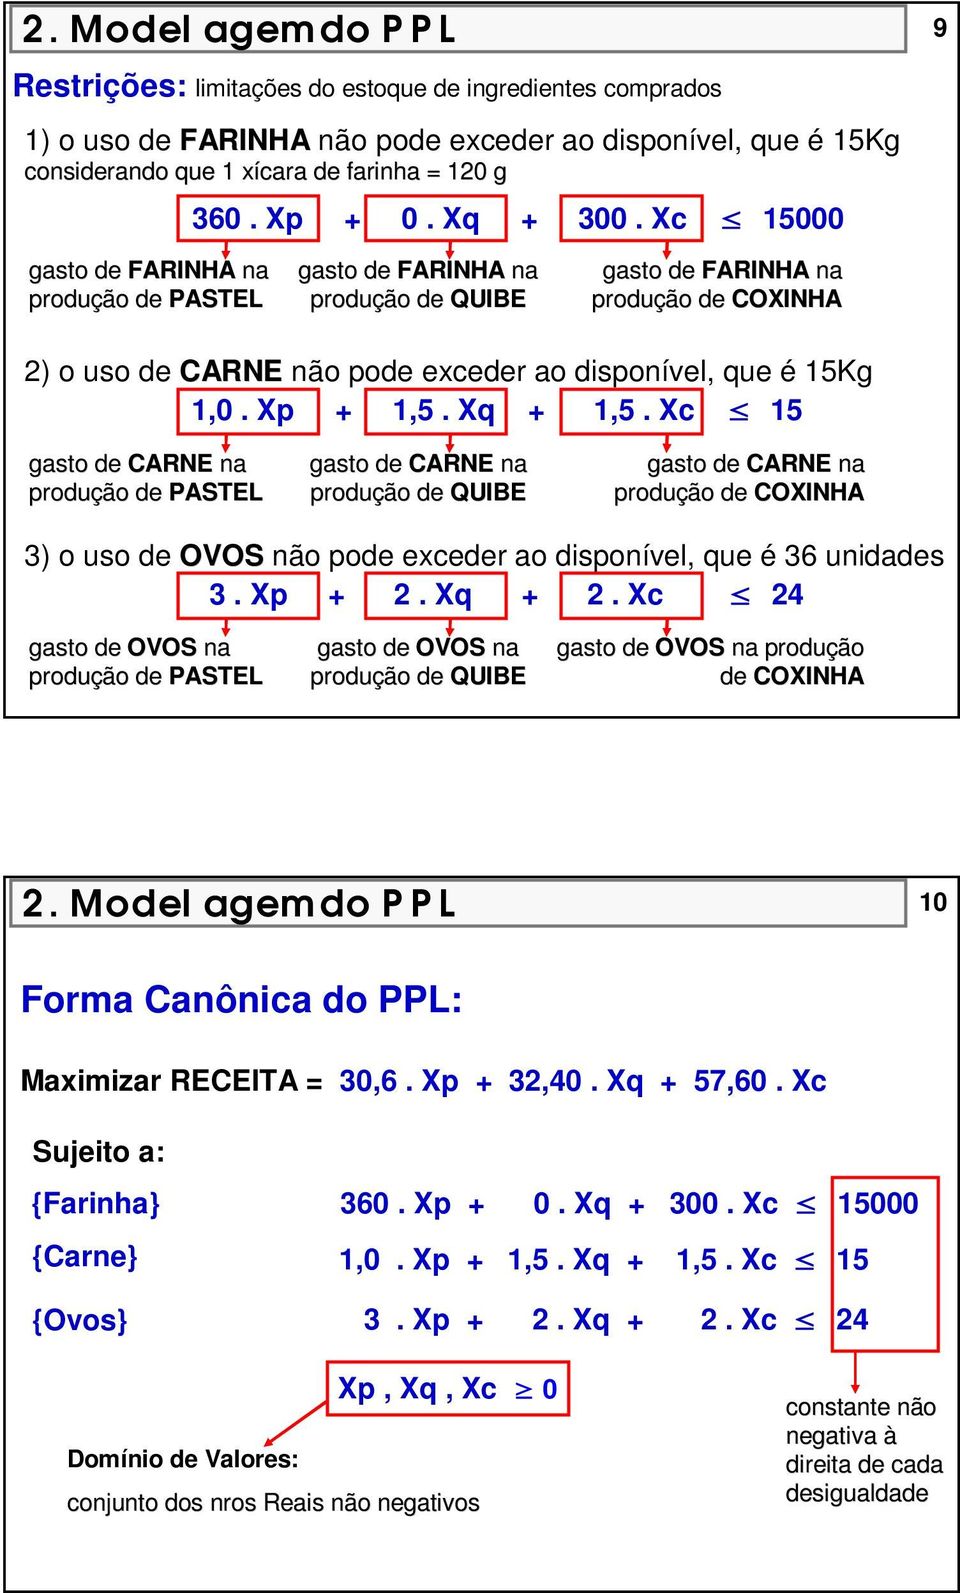 Xc 15000 gasto de FARINHA na produção de PASTEL gasto de FARINHA na produção de QUIBE gasto de FARINHA na produção de COXINHA 2) o uso de CARNE não pode exceder ao disponível, que é 15Kg 1,0.